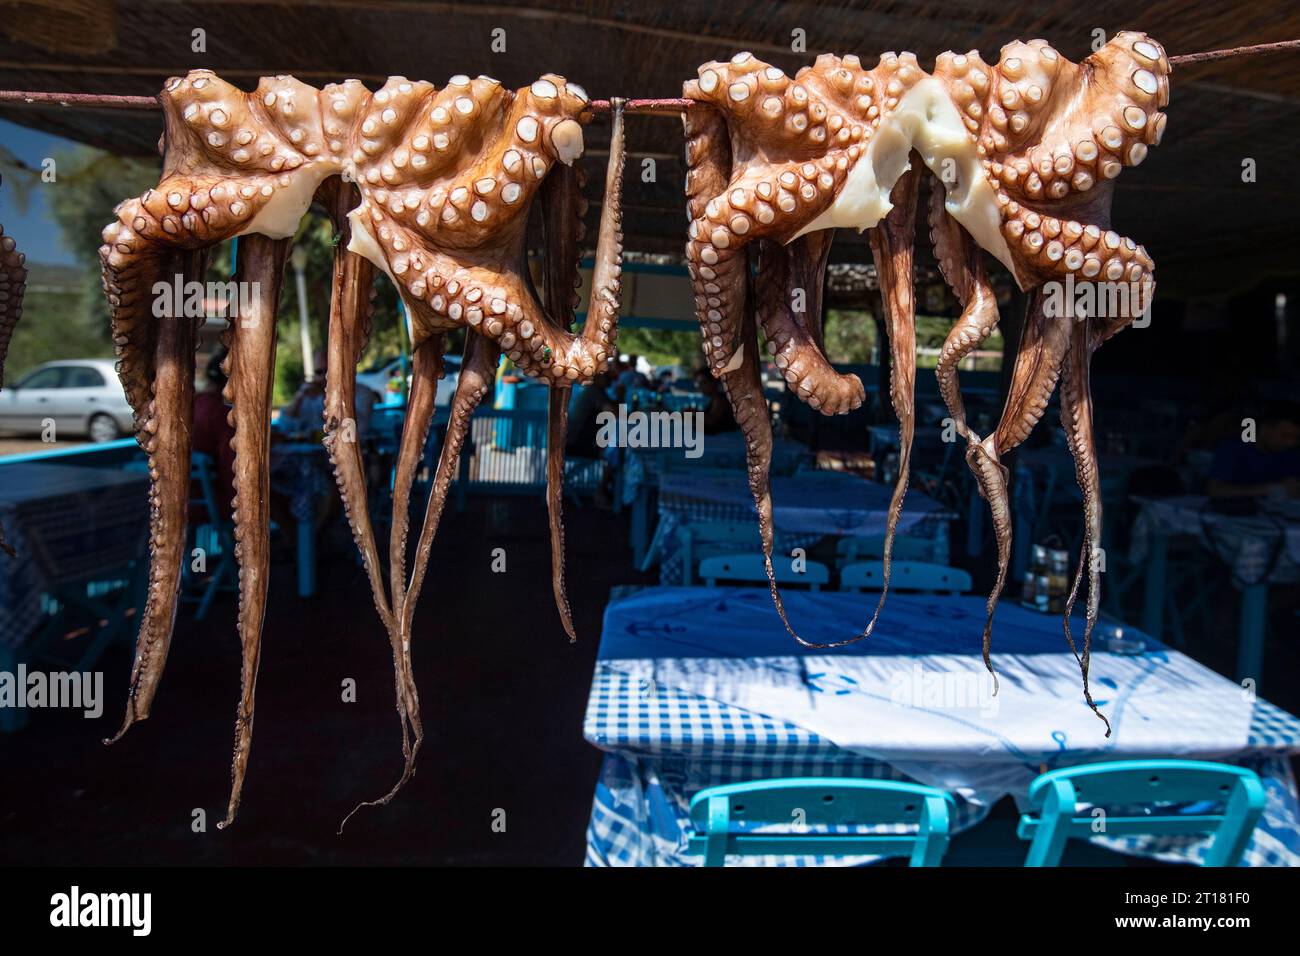 Tintenfisch, Oktopus (Octopus vulgaris) trocknet in der Sonne in einem Restaurant, Rhodos, Griechenland Stockfoto